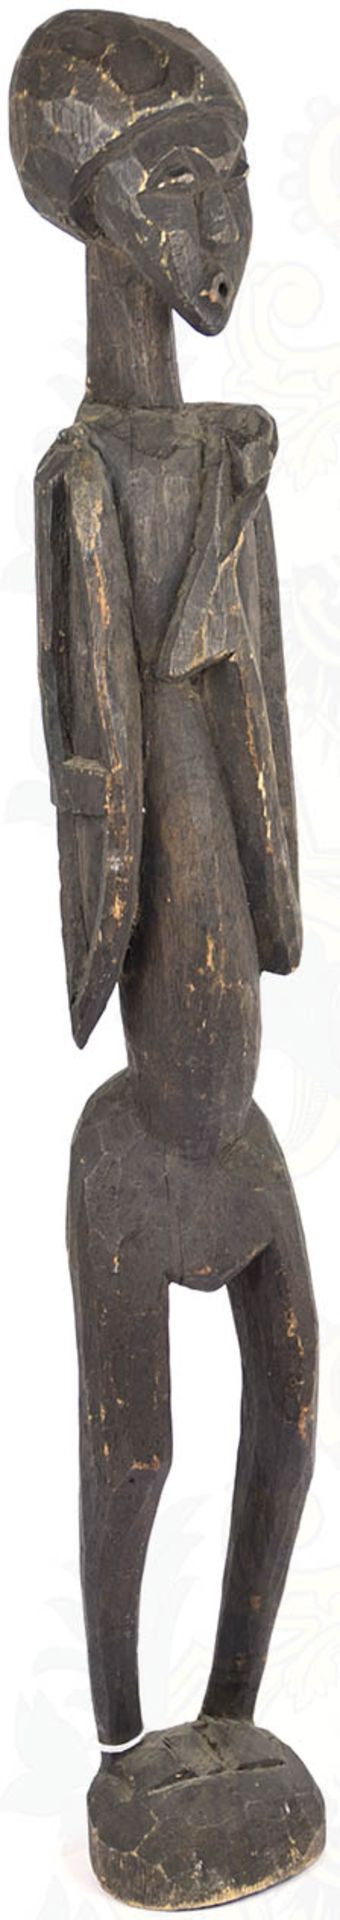 AFRIKANISCHE KULT-PLASTIK, Zentralafrika, gedunkeltes Holz, stilisierte Darstellung eines Mannes,